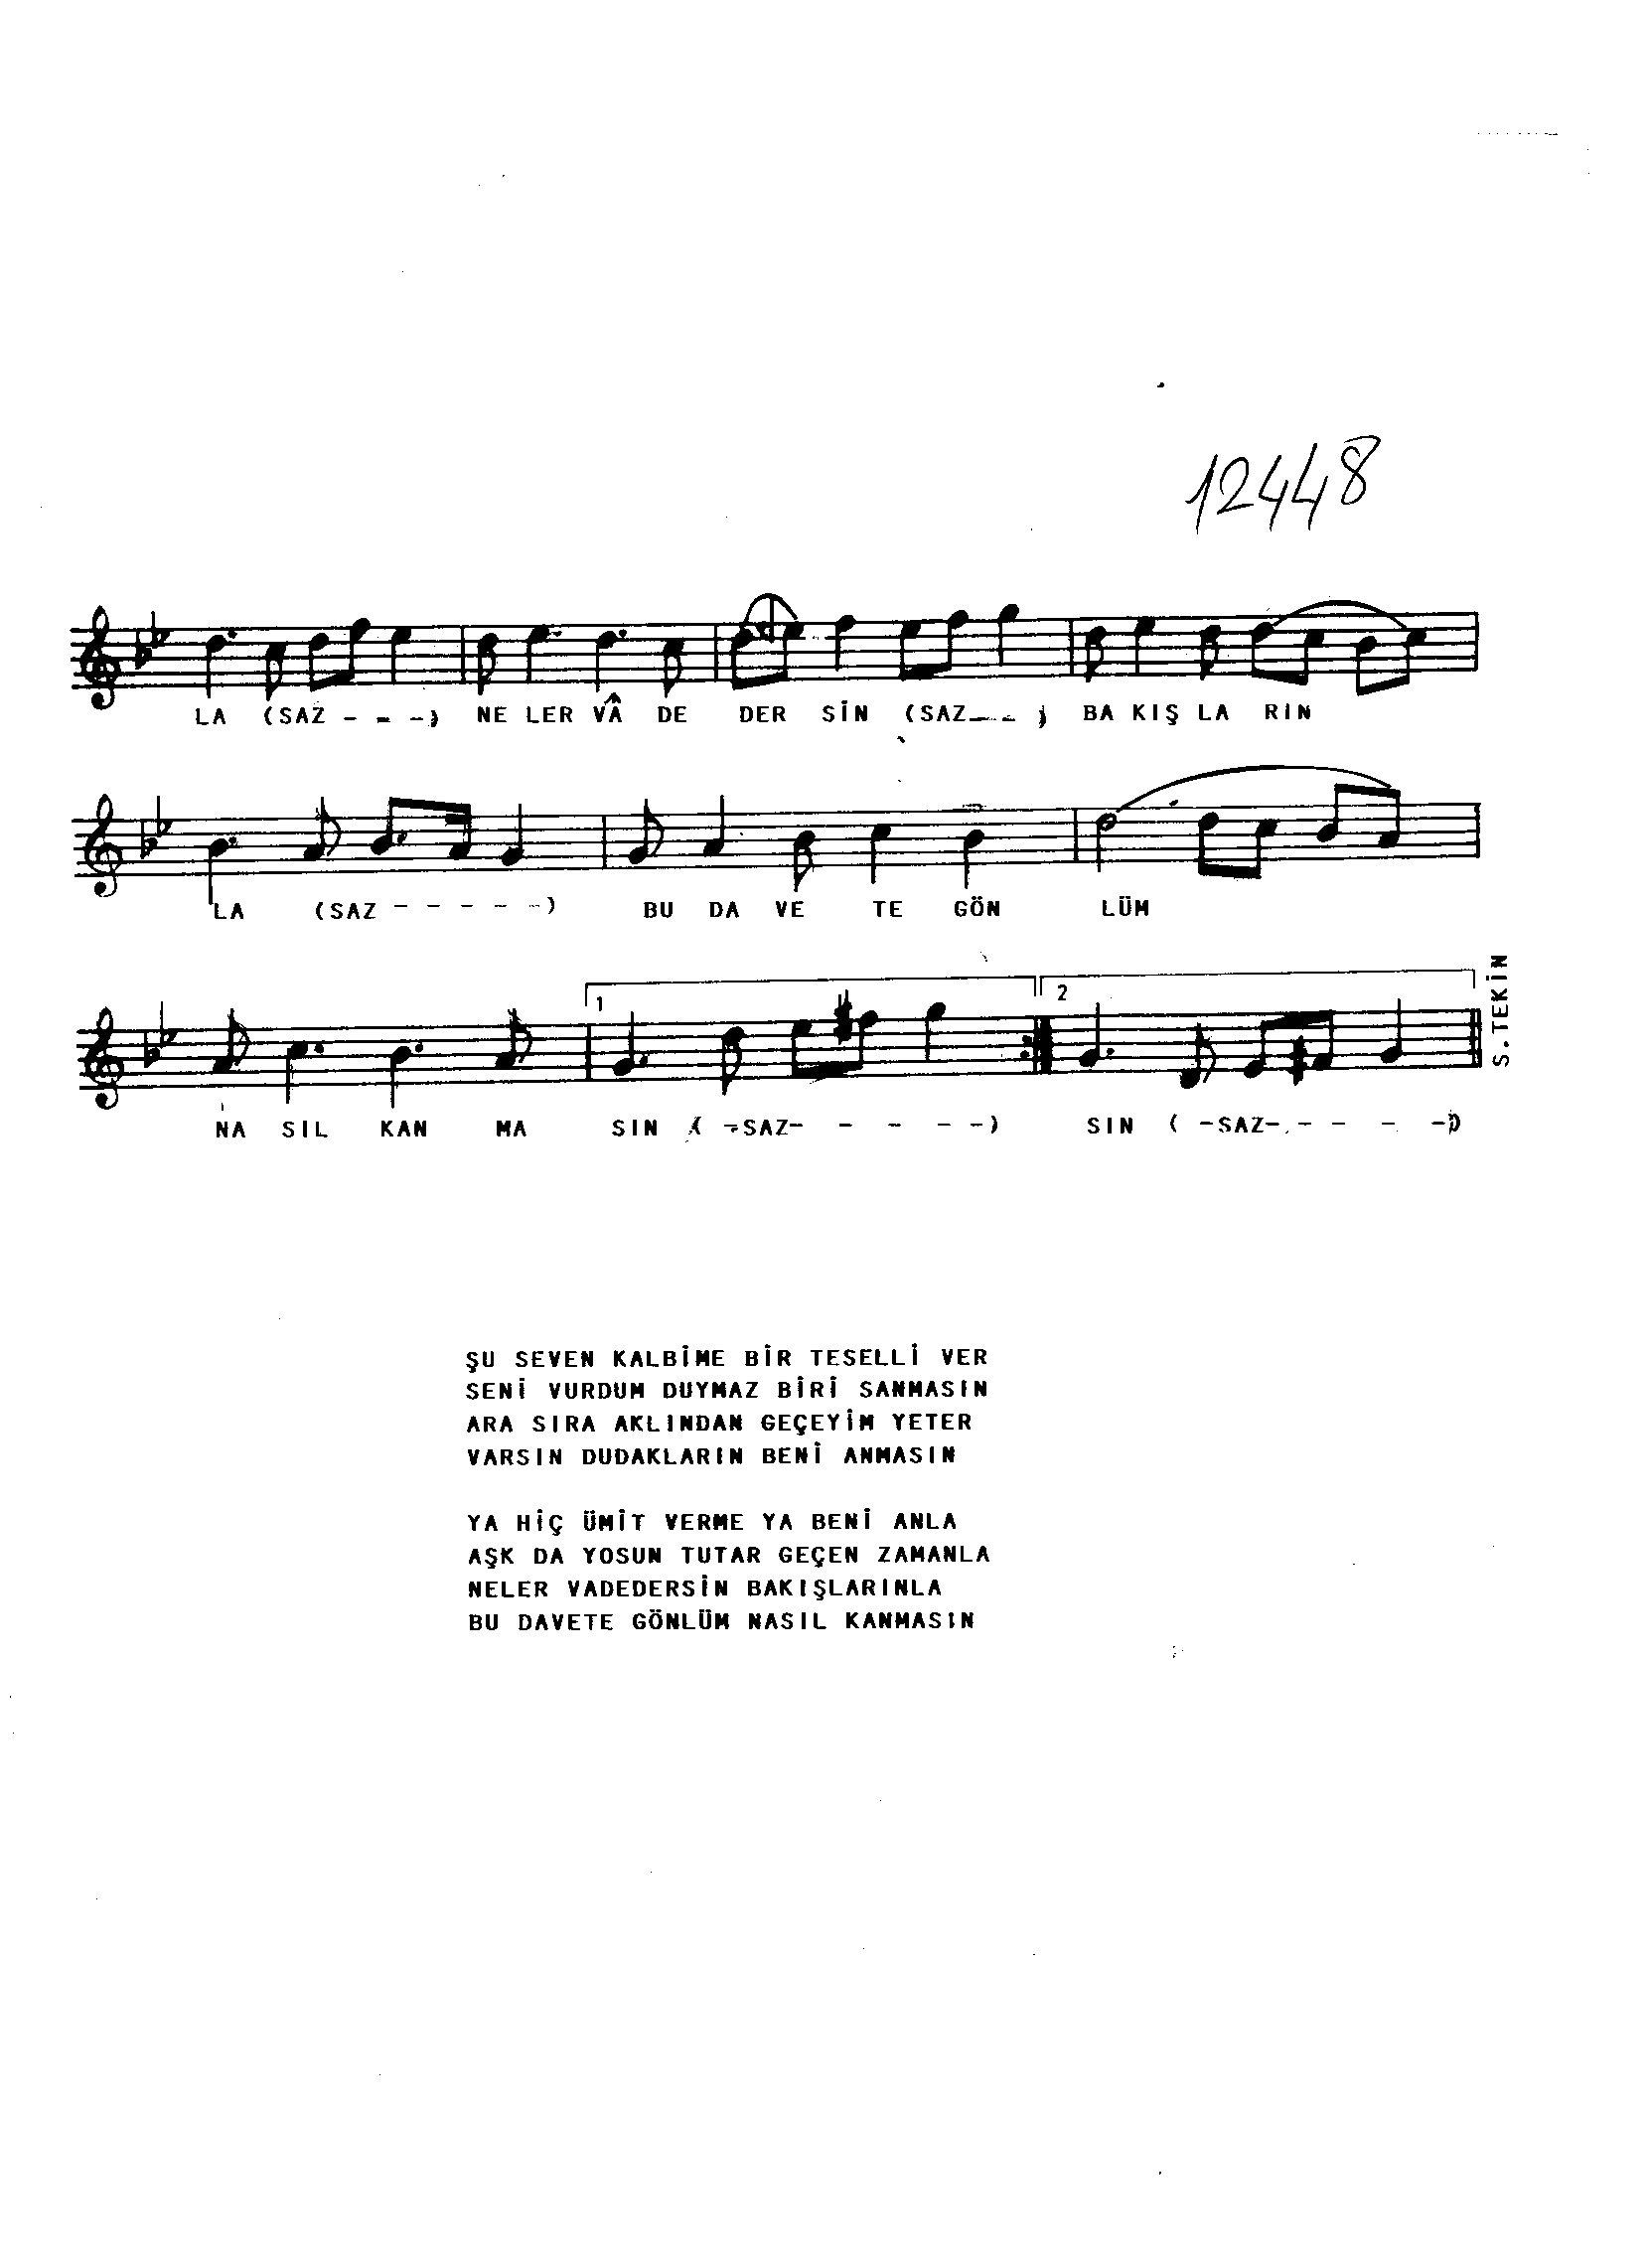 Nihâvend - Şarkı - Ertuğrul Yalçınkaya - Sayfa 2